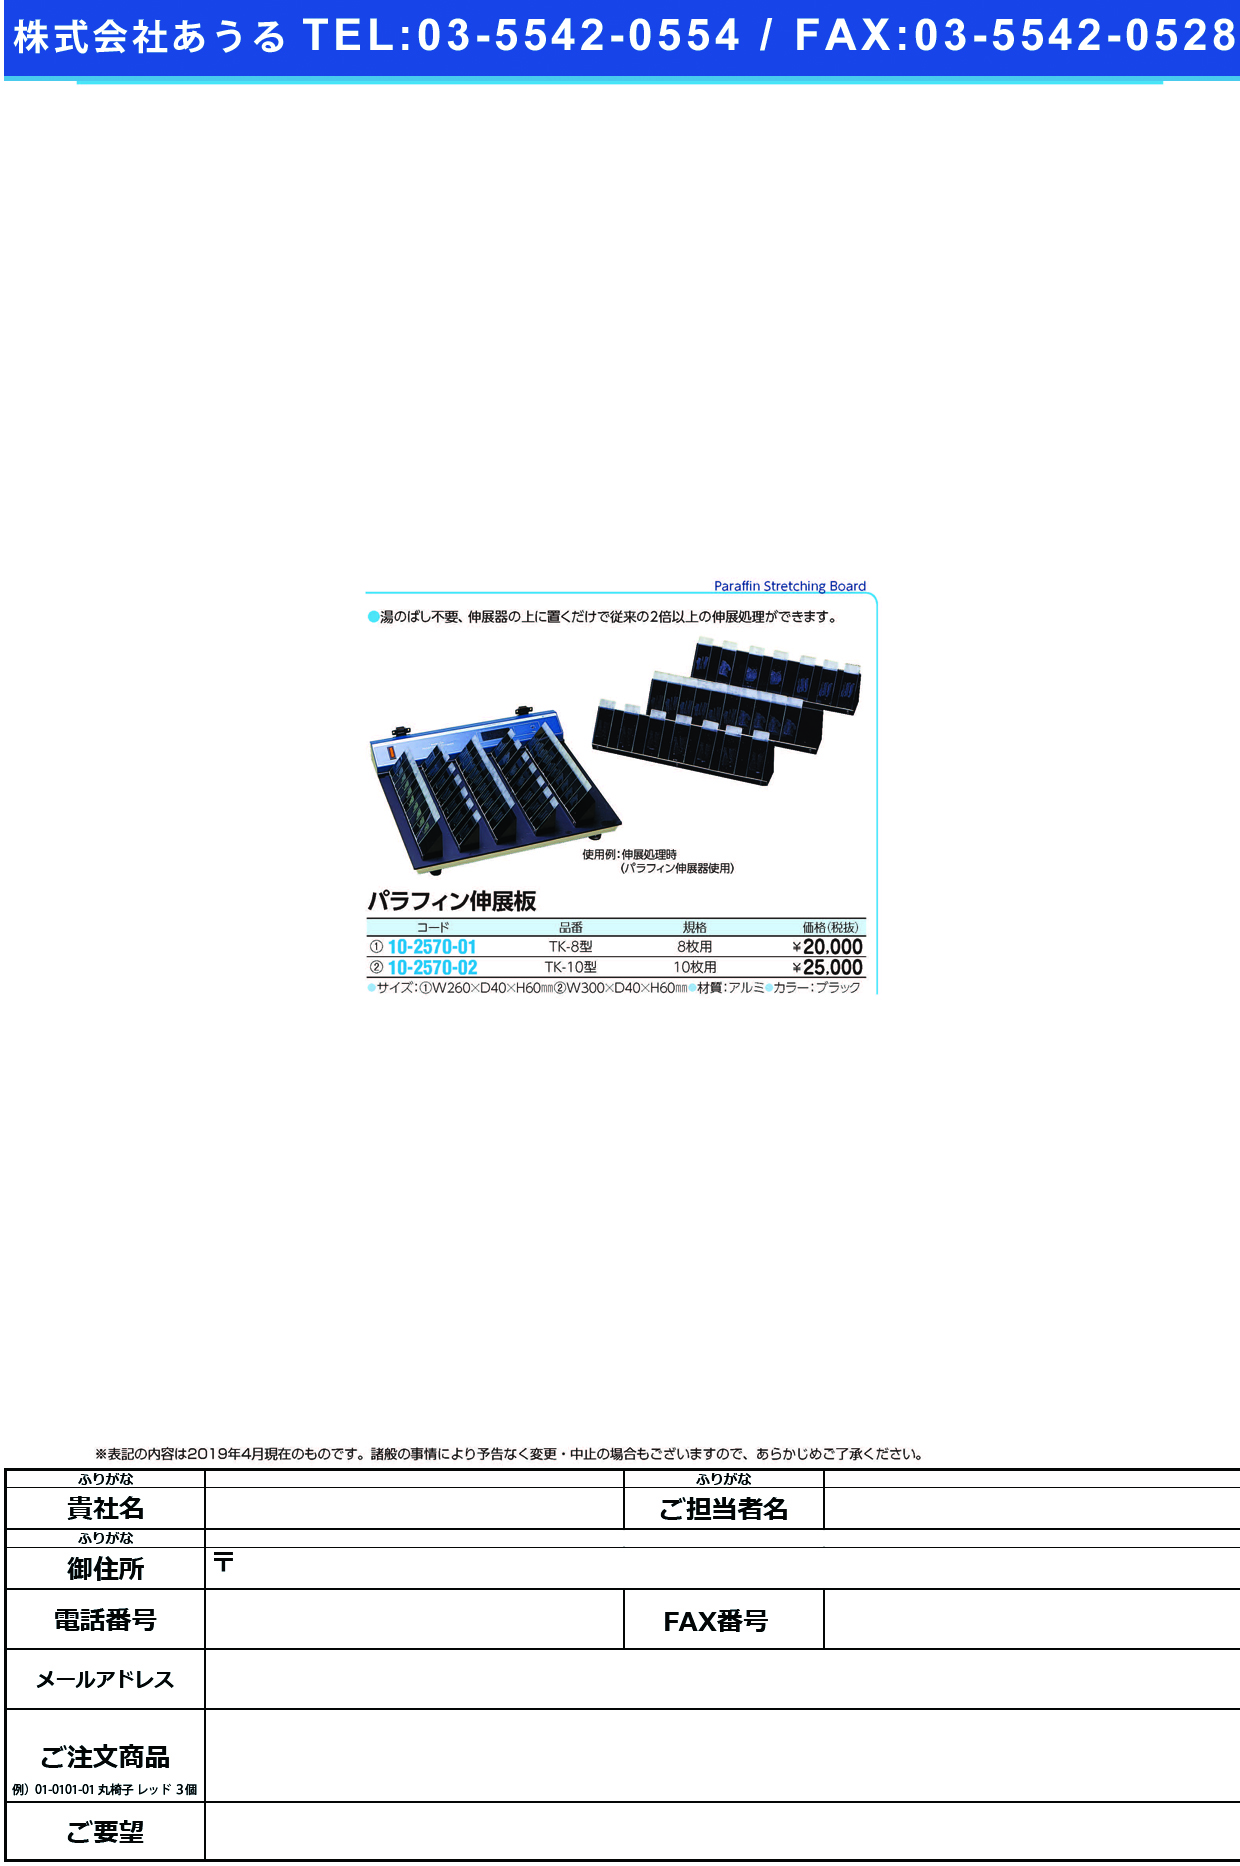 (10-2570-01)パラフィン伸展板（８枚用） TK-8(260X40X60MM) ﾊﾟﾗﾌｨﾝｼﾝﾃﾝﾊﾞﾝ ブラック【1個単位】【2019年カタログ商品】